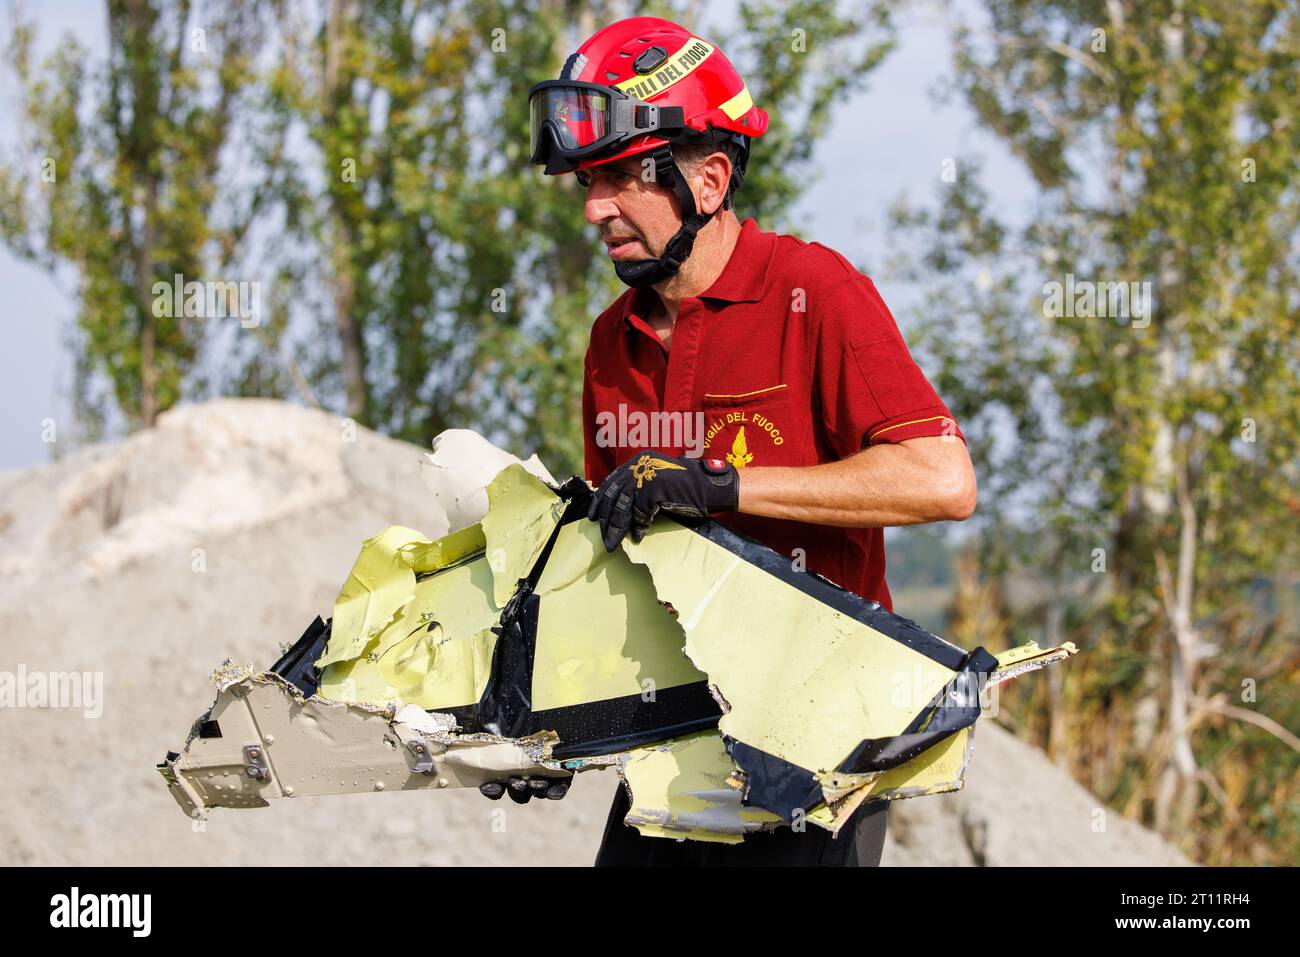 Ein Hubschrauber stürzte in einen Sandsteinbruch in Bondeno ab. An Bord waren zwei Personen, die bei dem Vorfall ihr Leben verloren haben. Die Feuerwehr durchsucht derzeit die Leichen in Bondeno, Ferrara, Italien Stockfoto